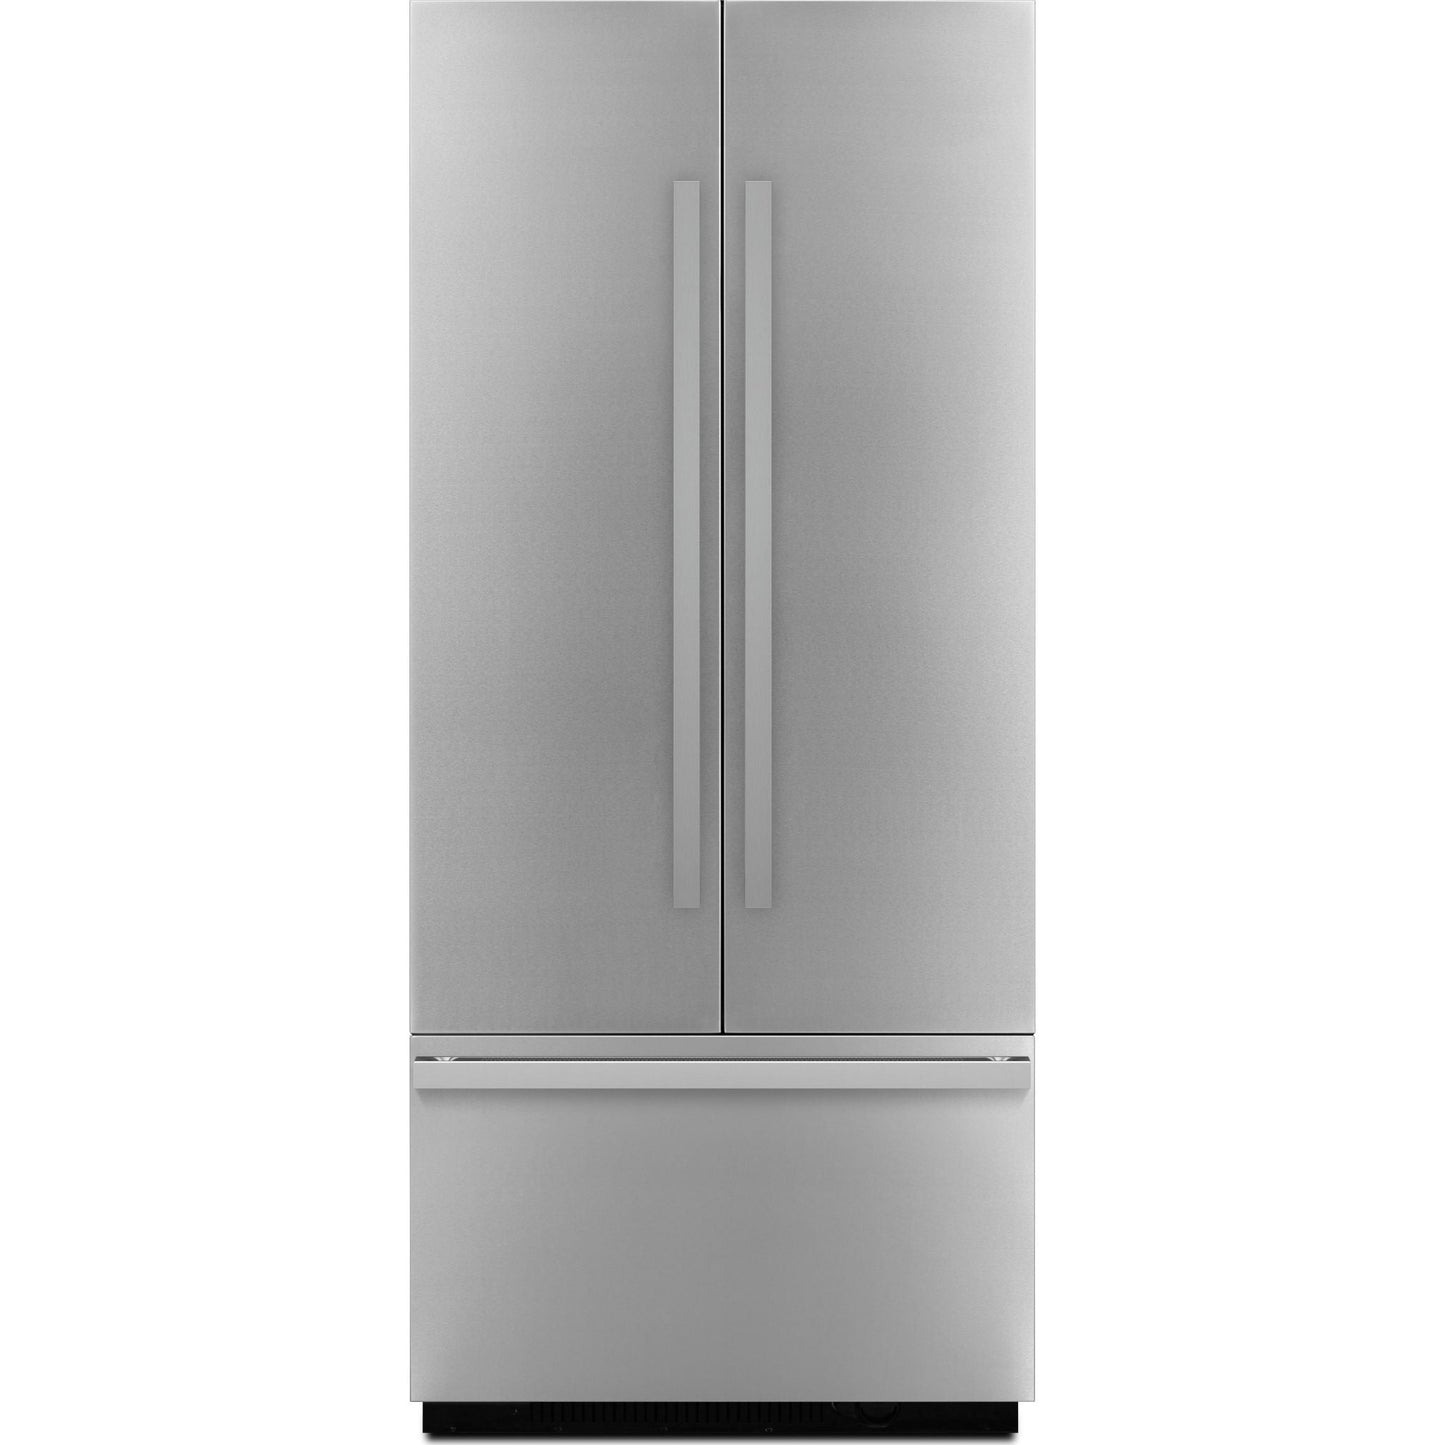 JennAir Refrigerator Built-In Panel Kit (JBFFS36NHM)